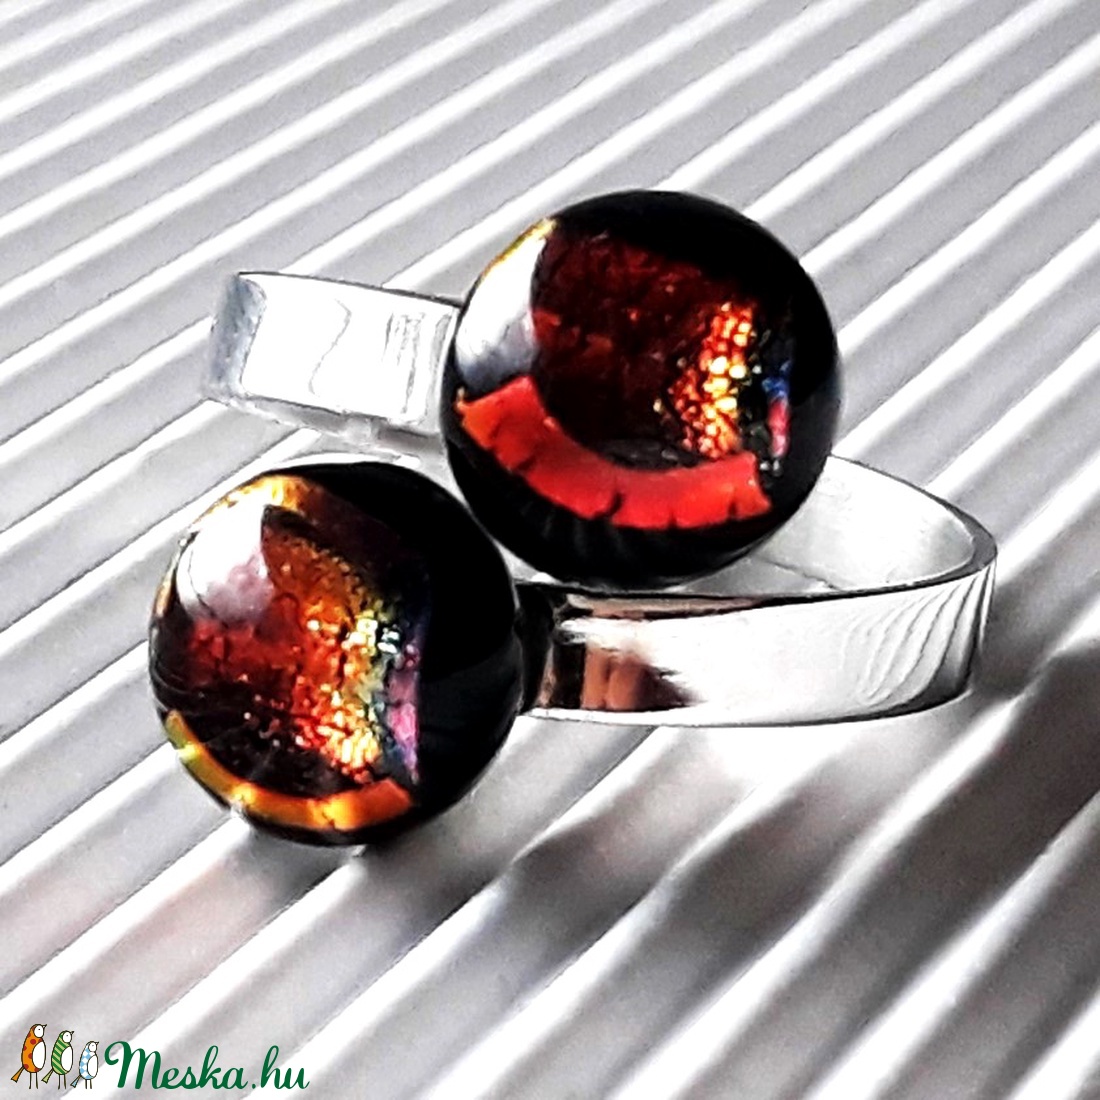 Ragyogó csillagpor dupla bogyós üveg gyűrű nemesacél alapon, trendi, design üvegékszer - ékszer - gyűrű - statement gyűrű - Meska.hu